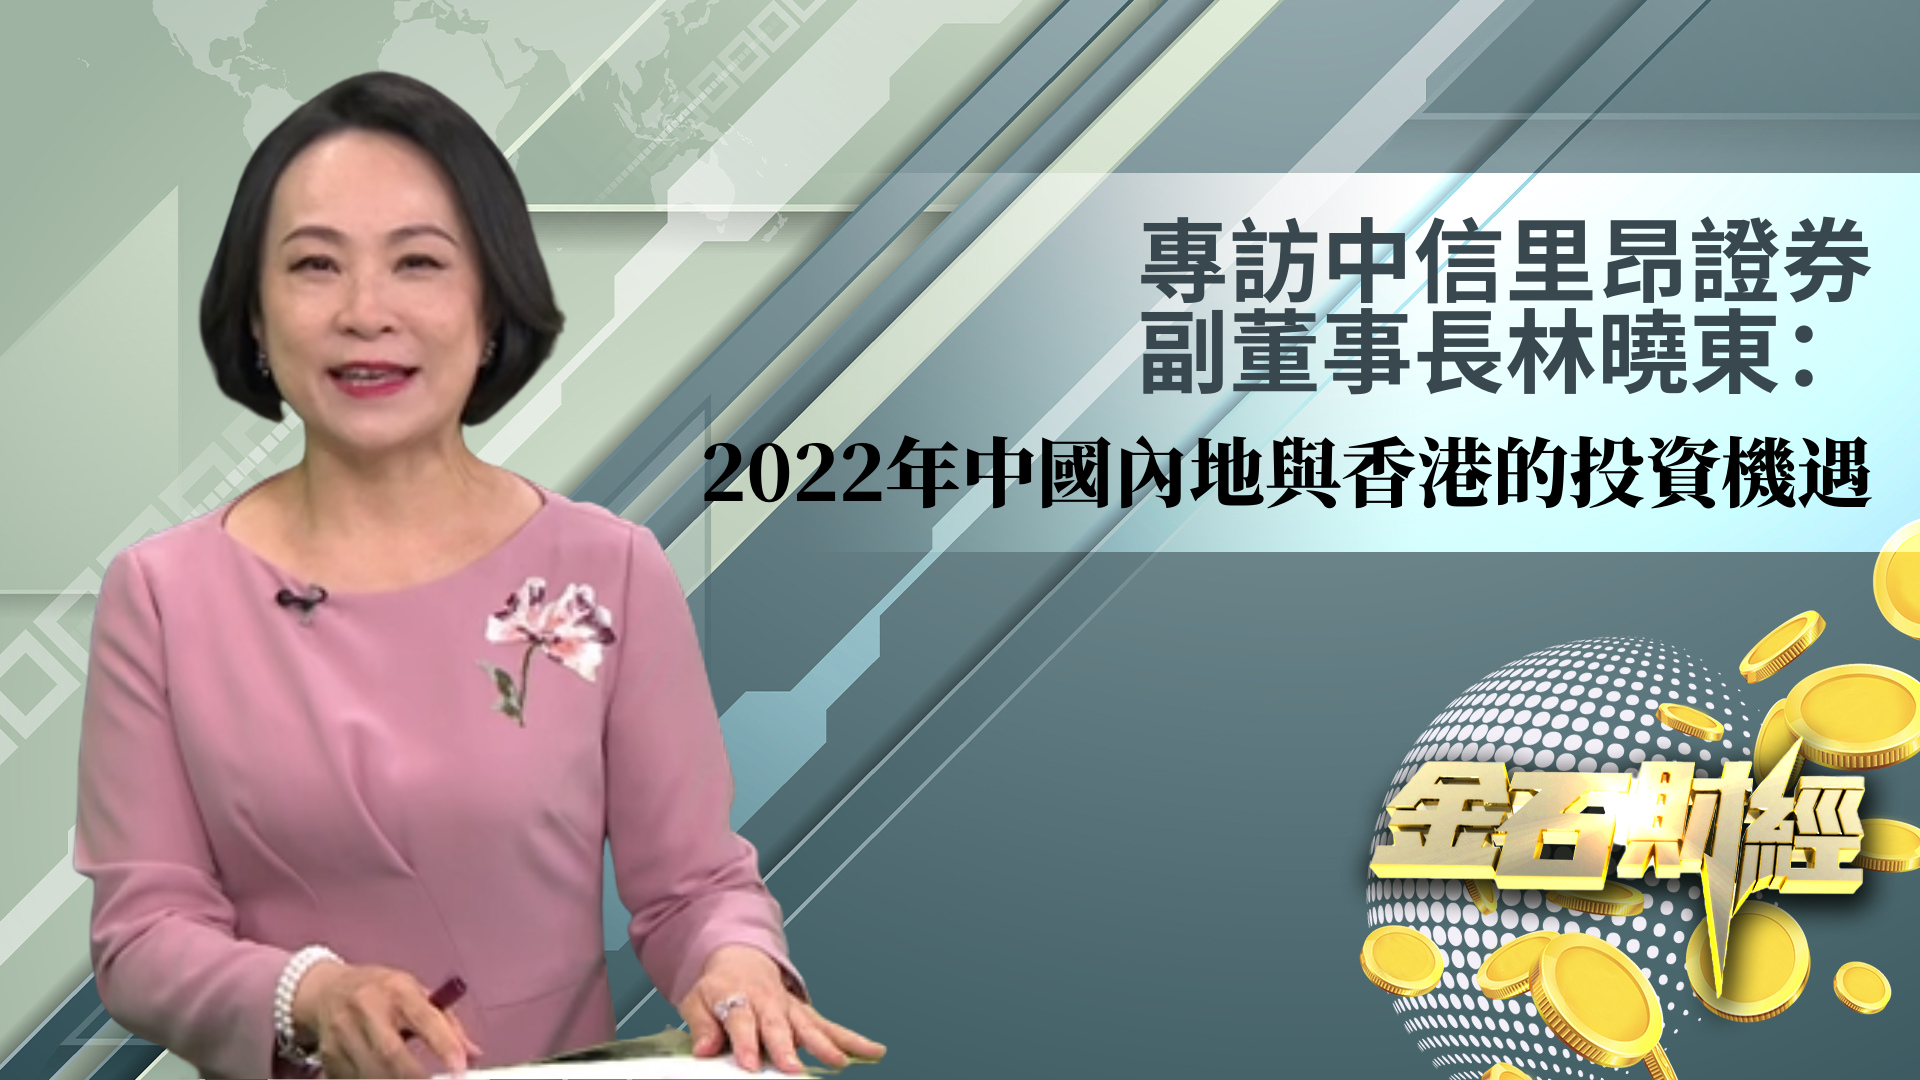 林晓东：2022年 中国内地与香港的投资机遇